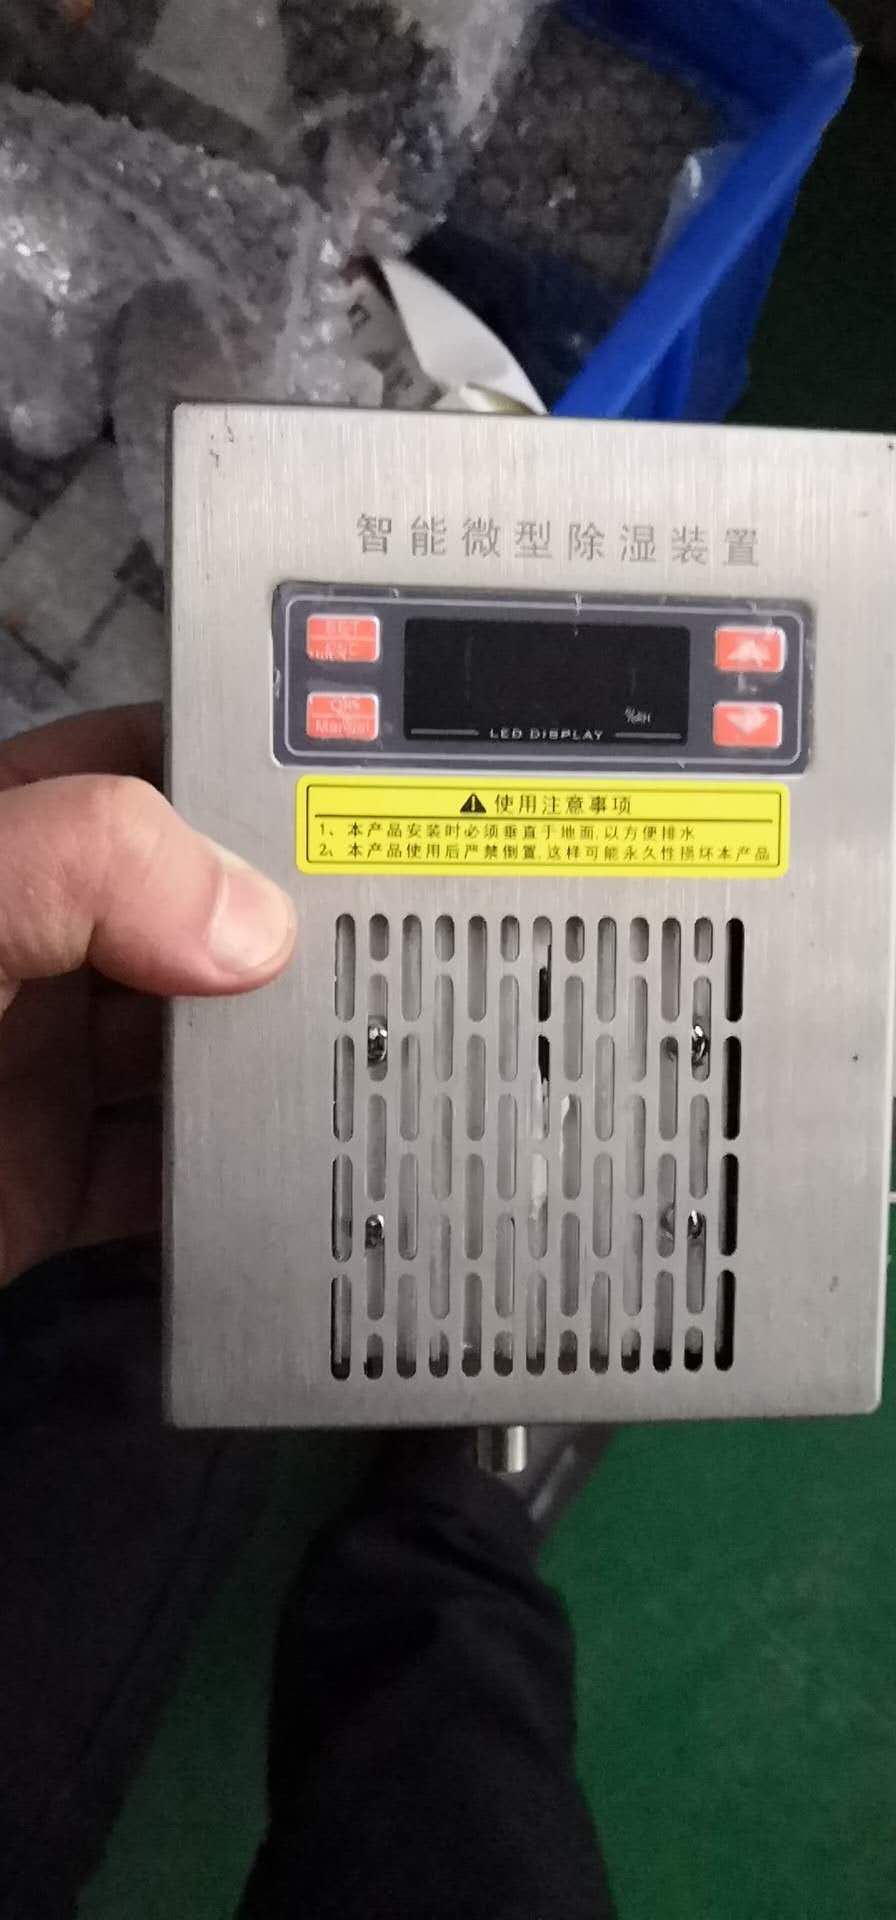 温湿度控制器NHR-1303F-00-K3